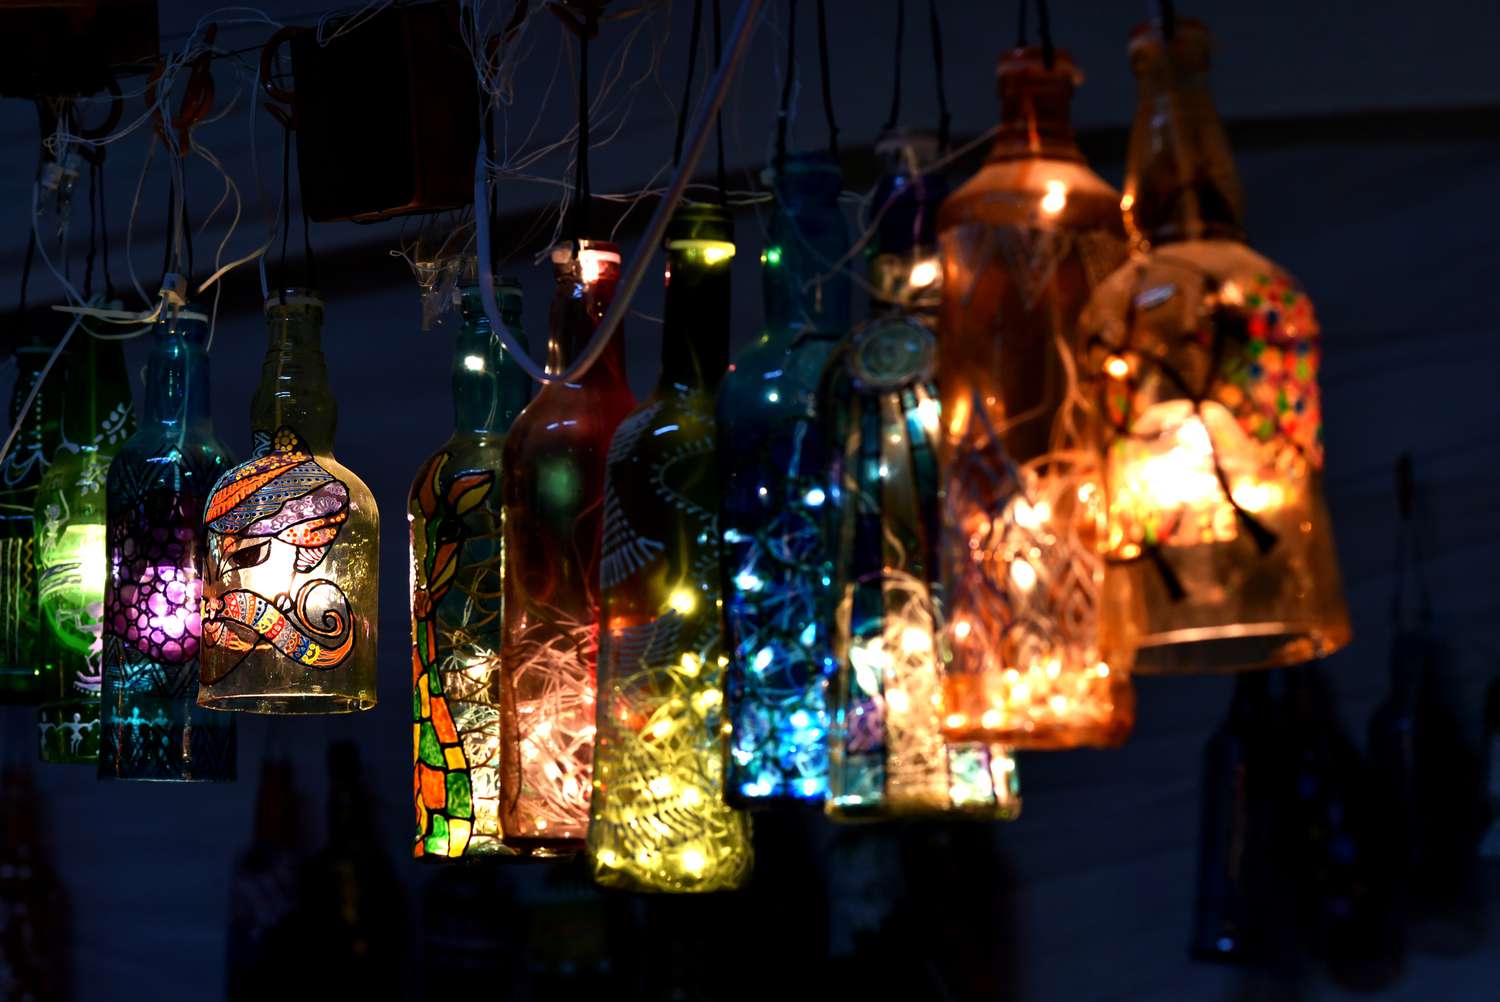 Lights inside hanging bottles